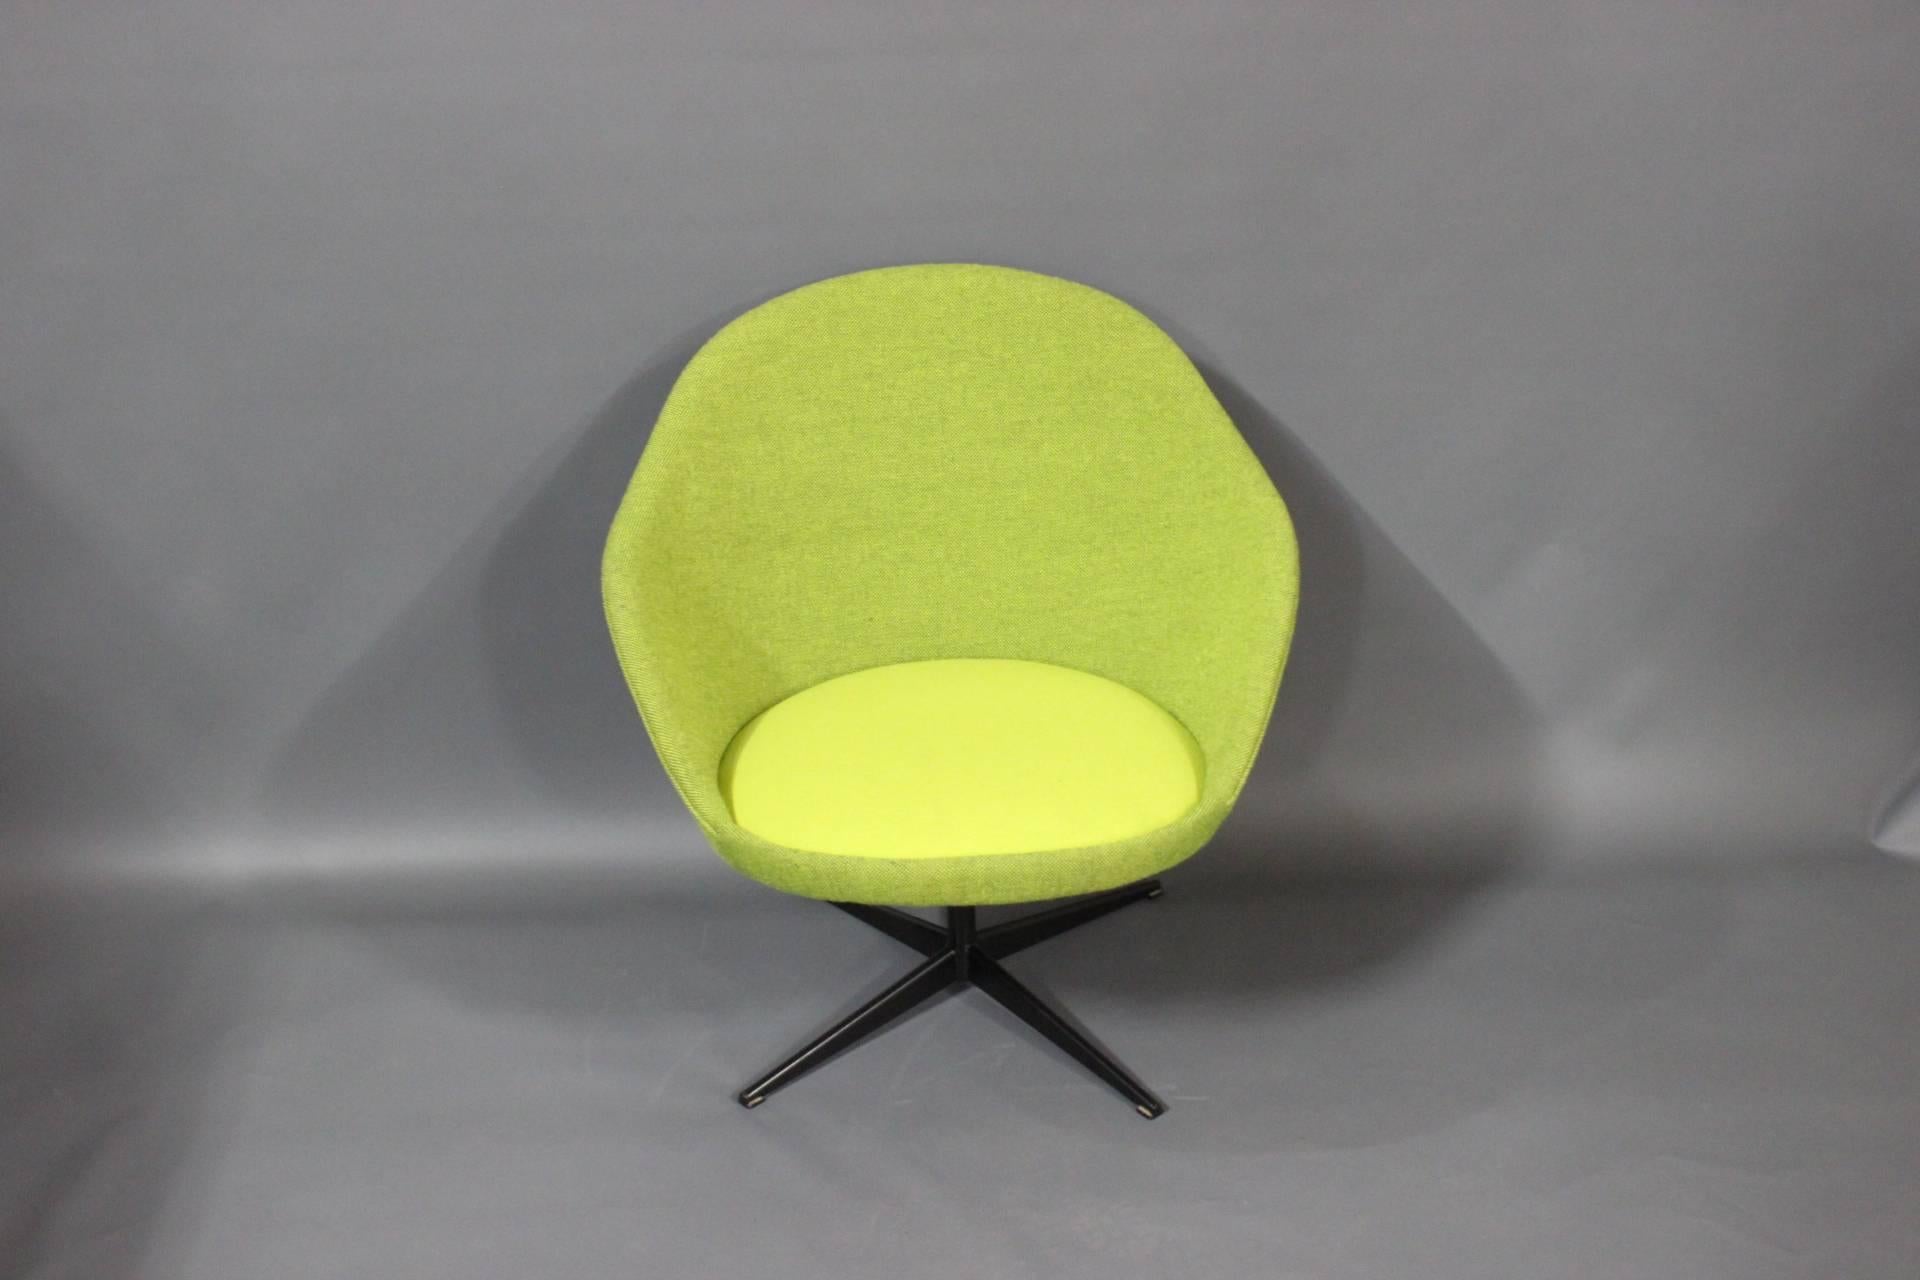 Entdecken Sie den Komfort und den Charme dieses Retro-Sessels aus den 1960er Jahren. Gepolstert mit wunderschöner grüner Hallingdal-Wolle verleiht er Ihrer Einrichtung nicht nur einen farbenfrohen Touch, sondern bietet auch ein luxuriöses und